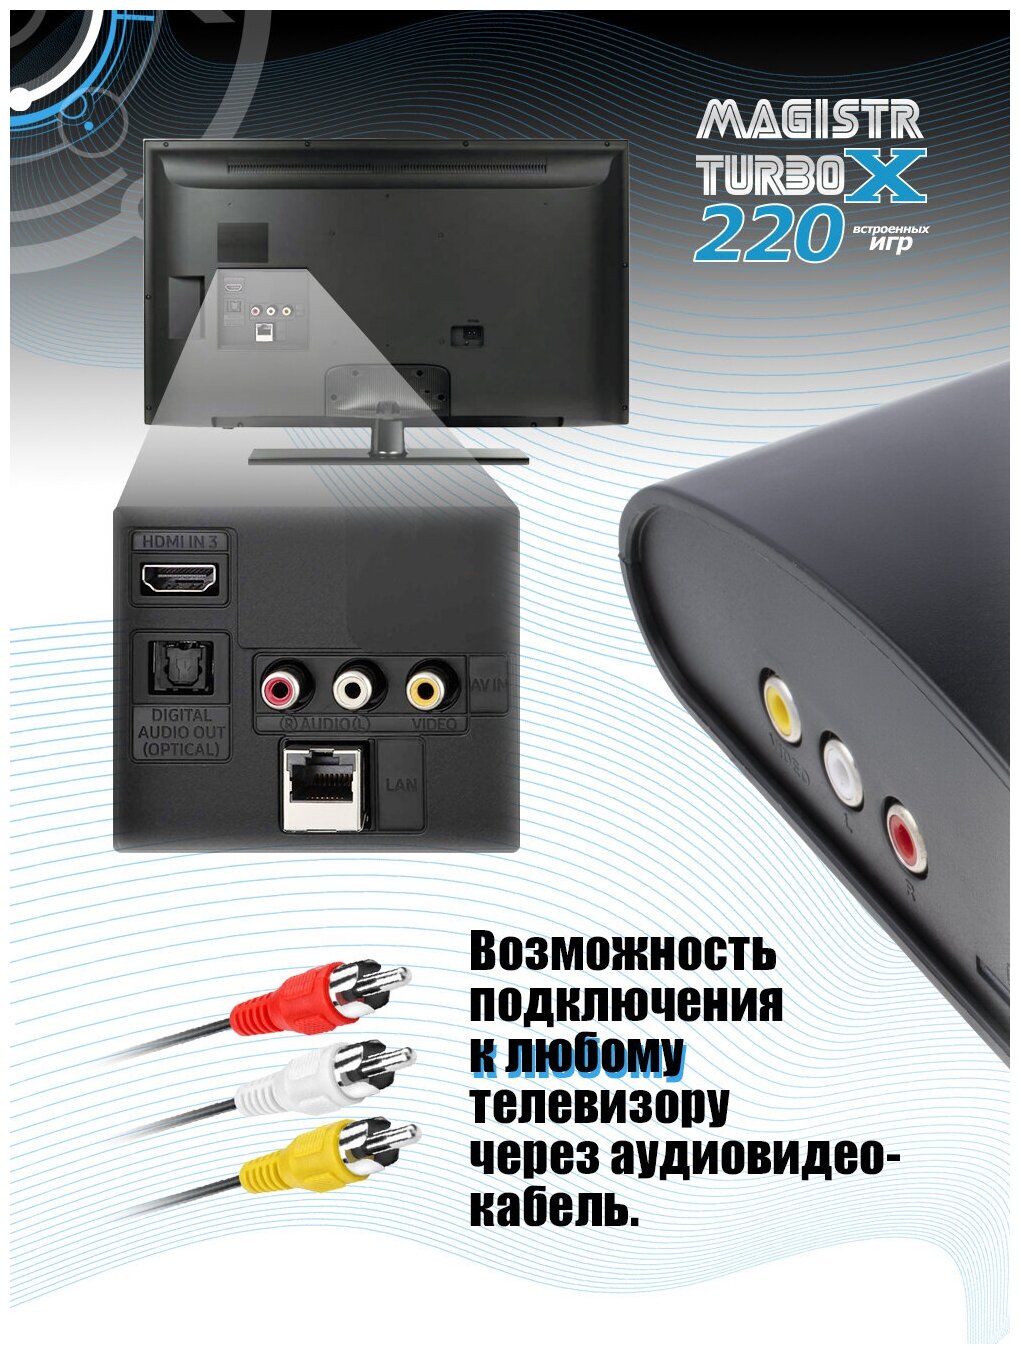 Игровая приставка New Game Magistr X 220 игр - фото №7